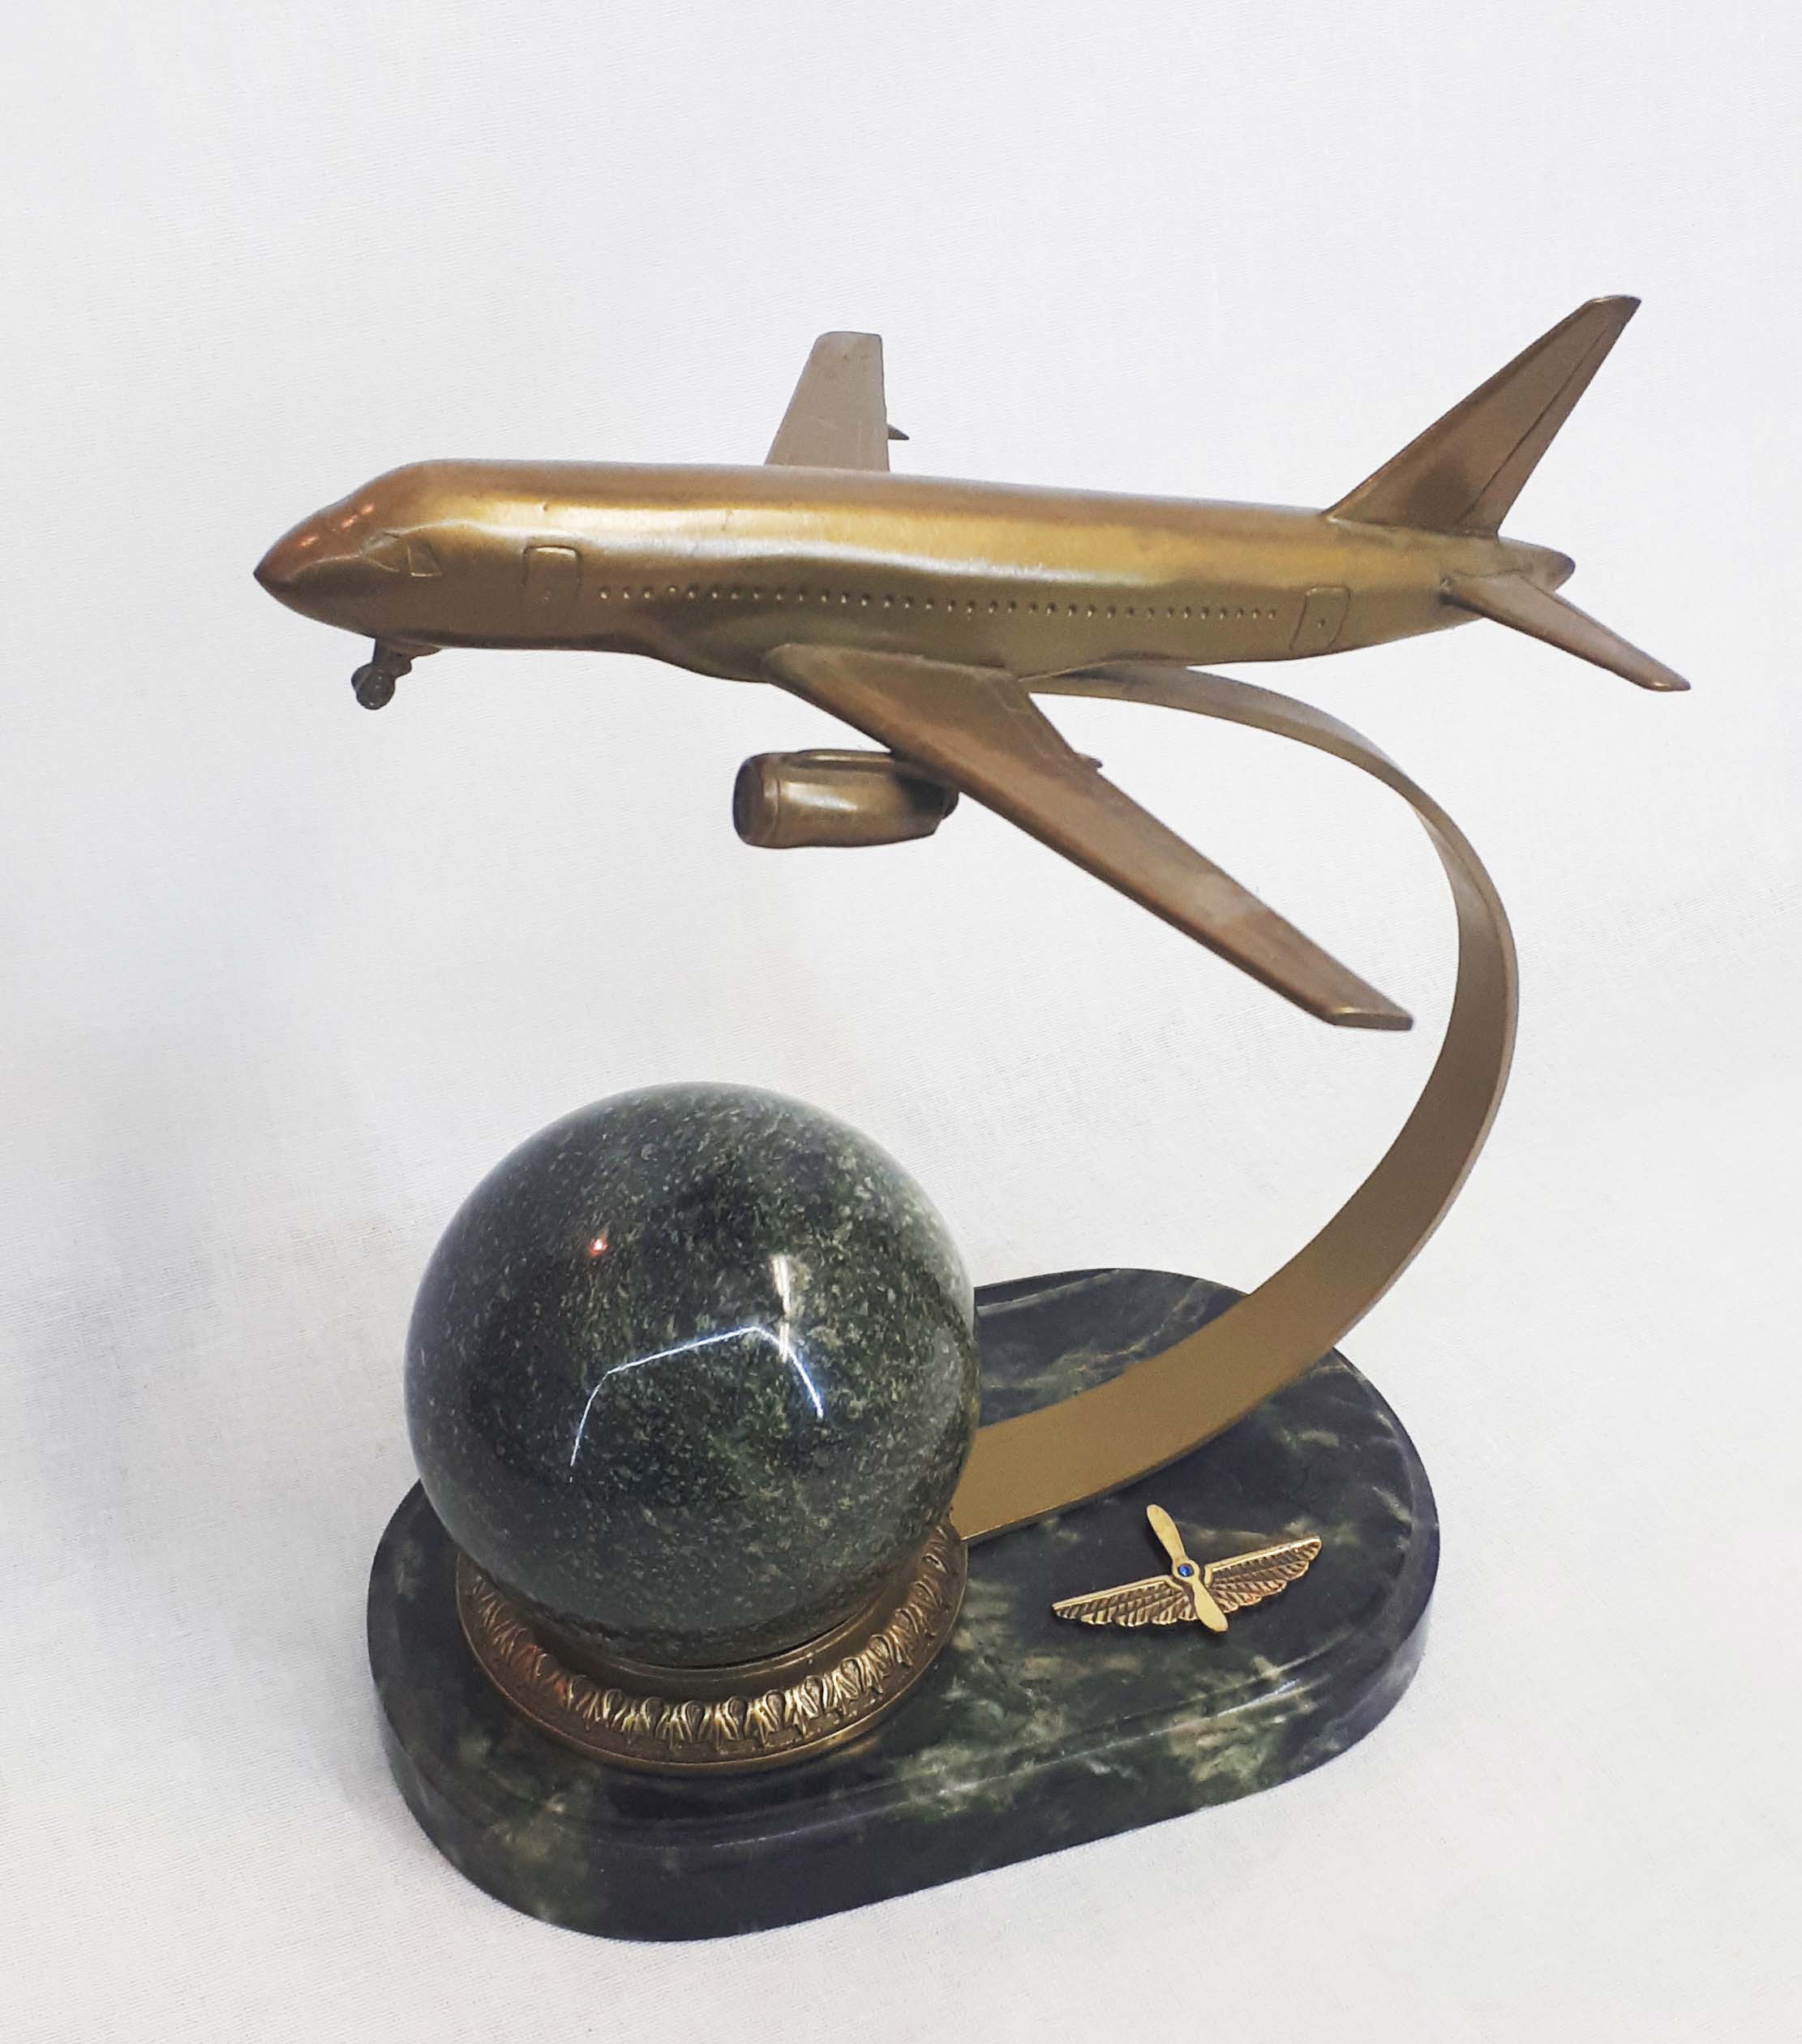 Сувенир "Самолет гражданской авиации" (самолет собран из 8 деталей) (шар)